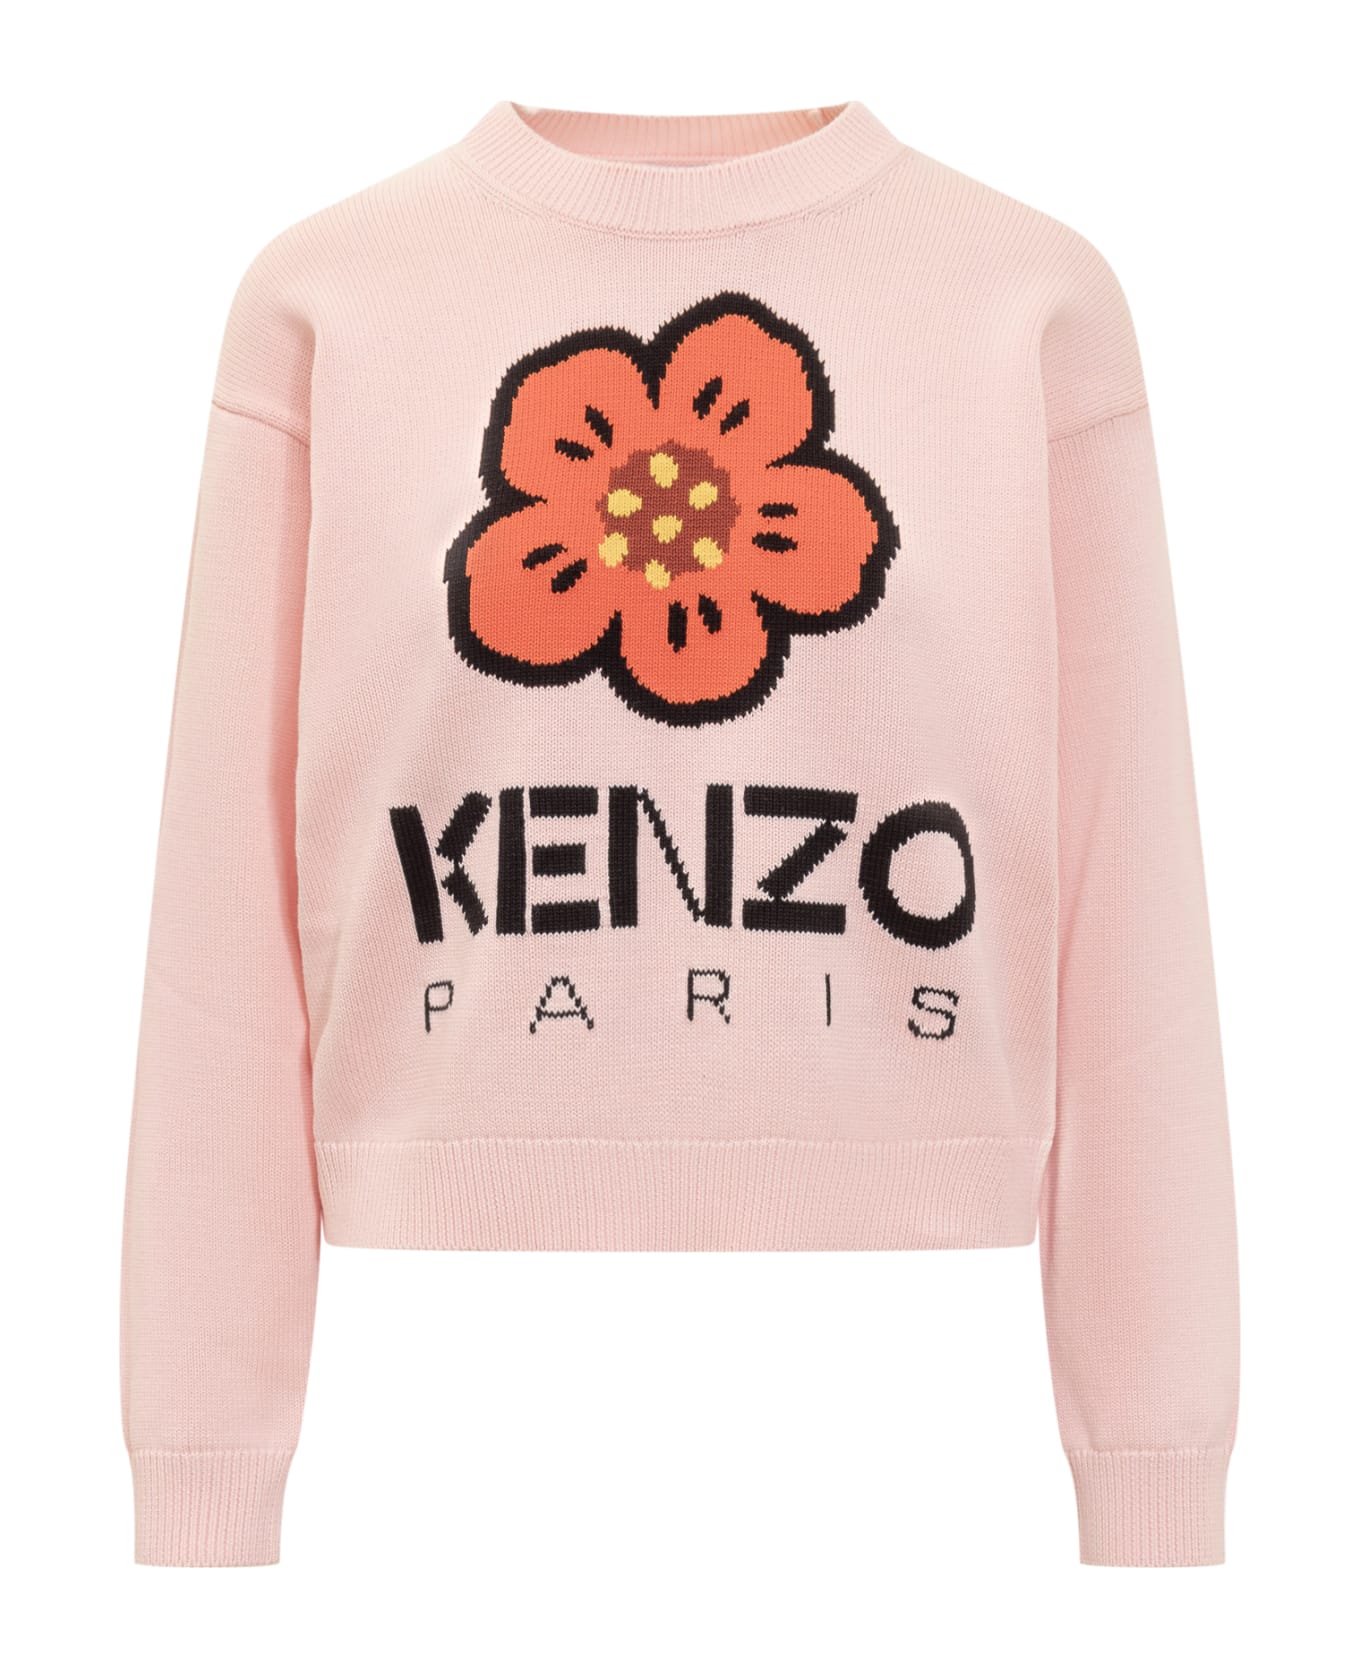 Kenzo Boke Flower Sweater - Faded pink